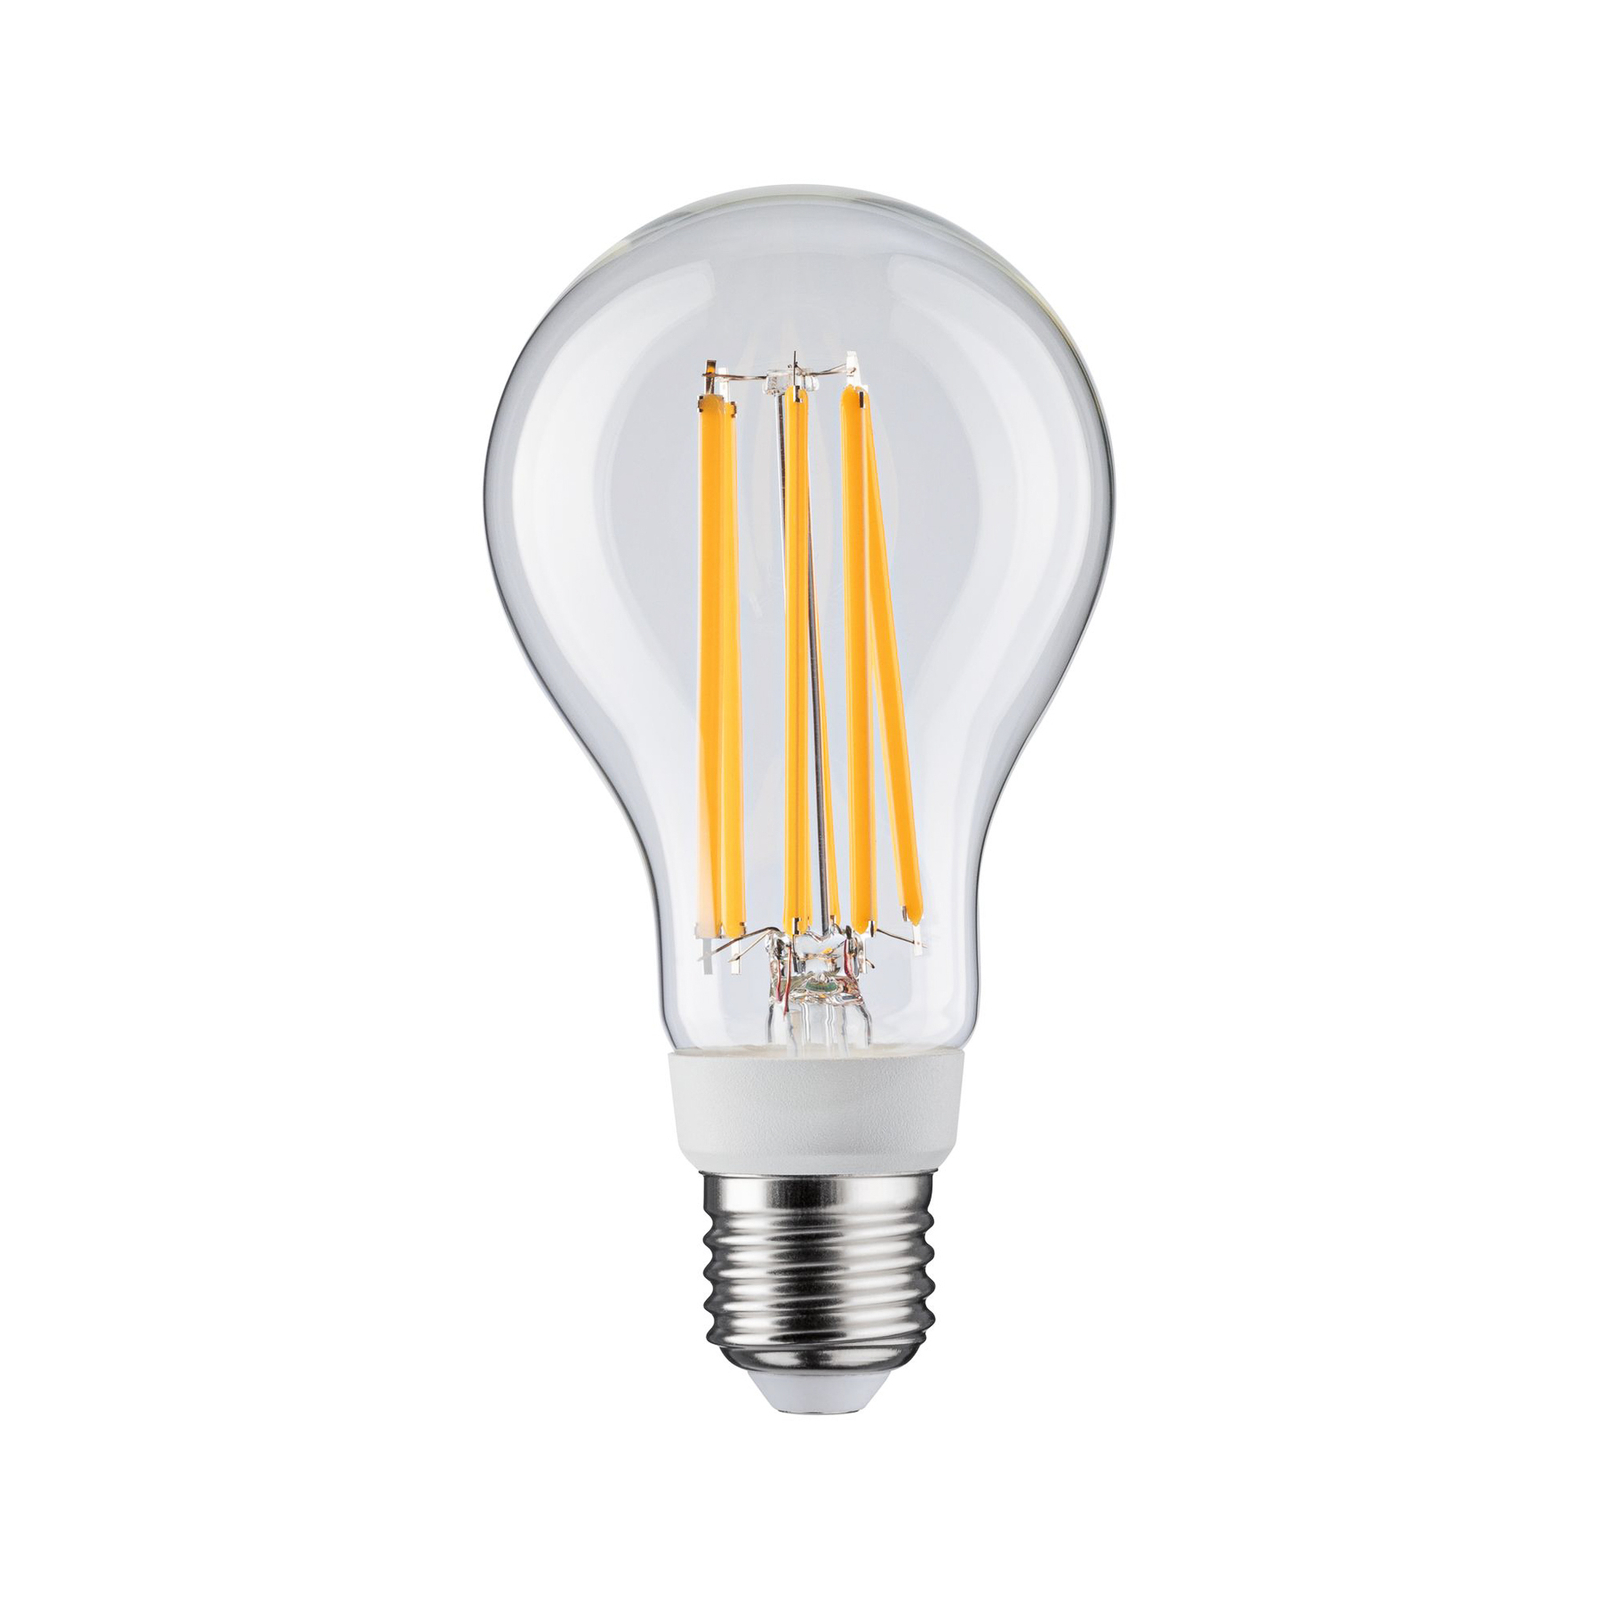 Mortal agitatie Levering Paulmann LED lamp E27 15W filament 2.700K dimbaar | Lampen24.be